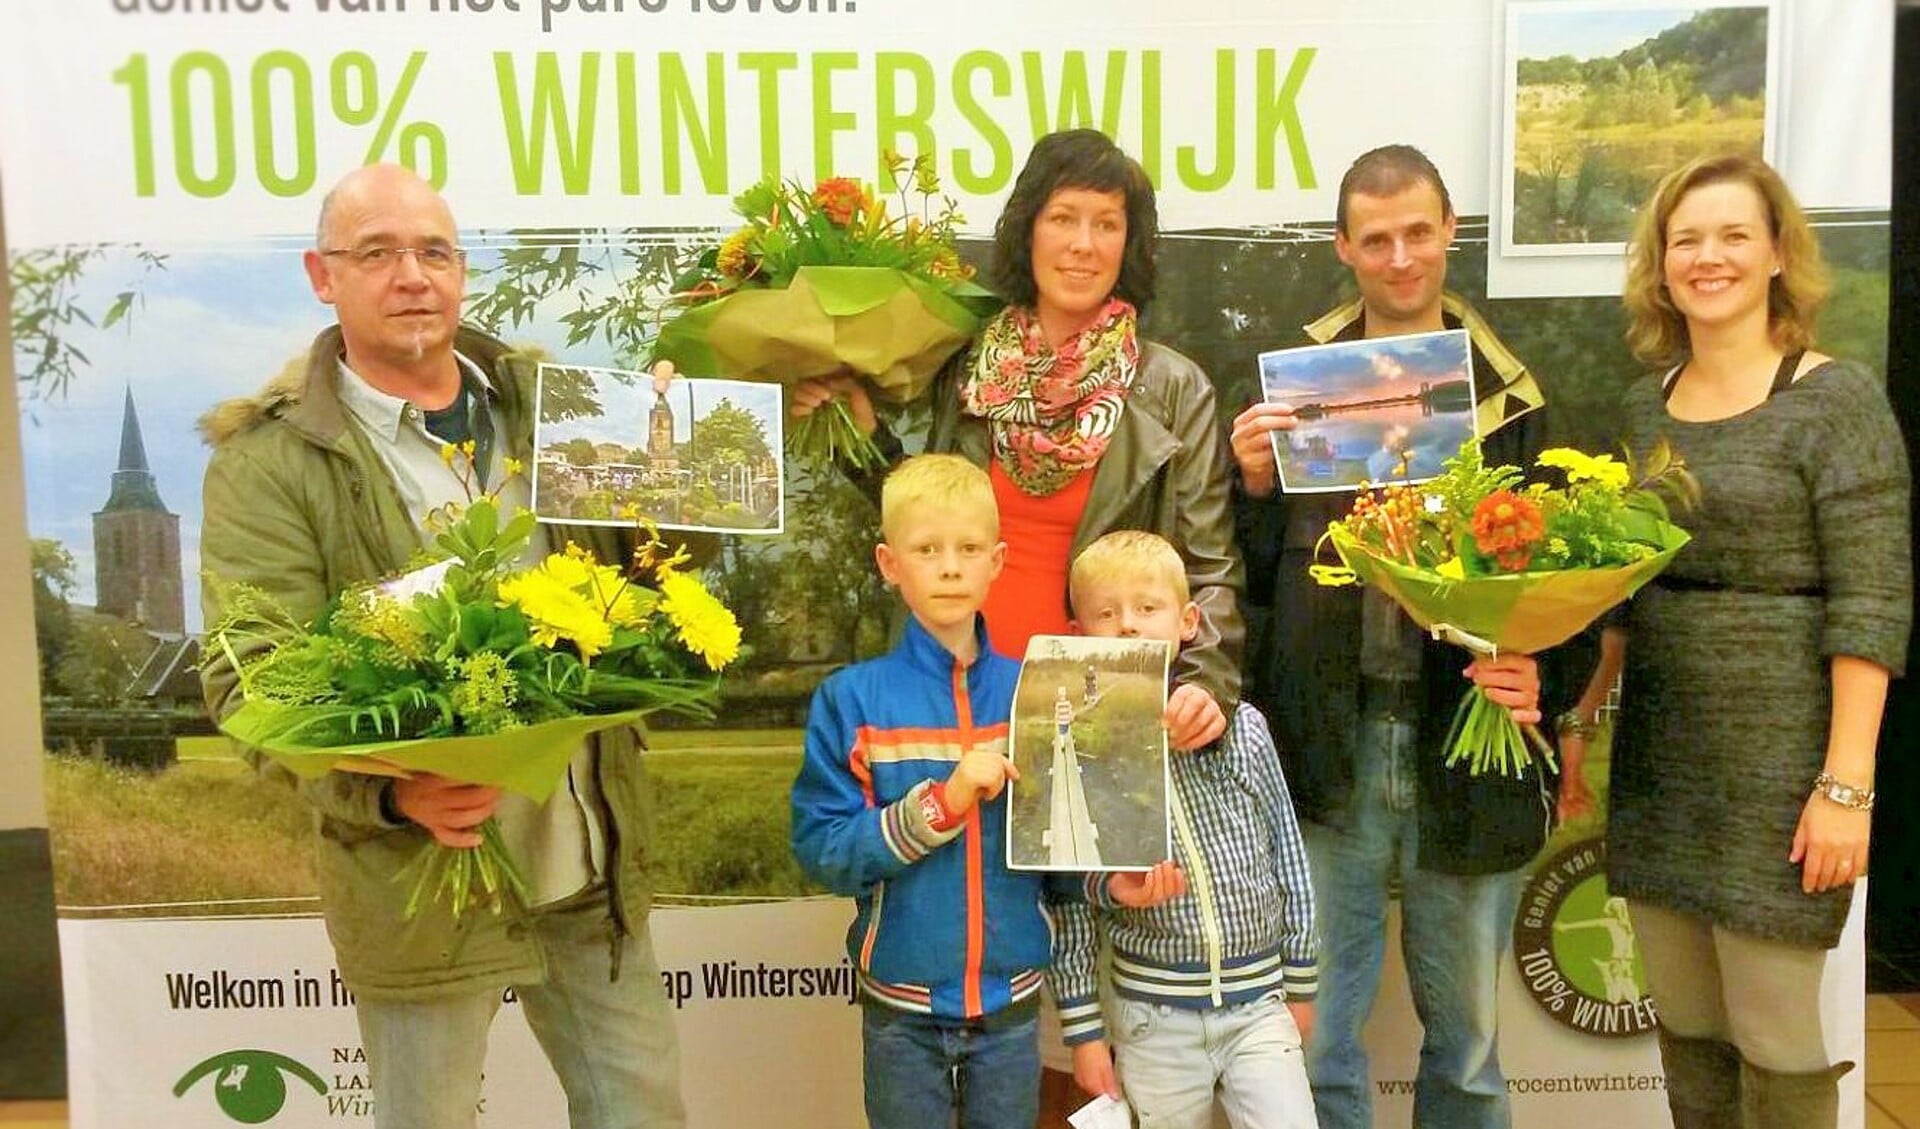 Jaap Wakker, Maebel Wittebroek-Floors met haar zonen, Pieter Navis en Imke te Selle van Winterswijk Marketing. Foto: PR